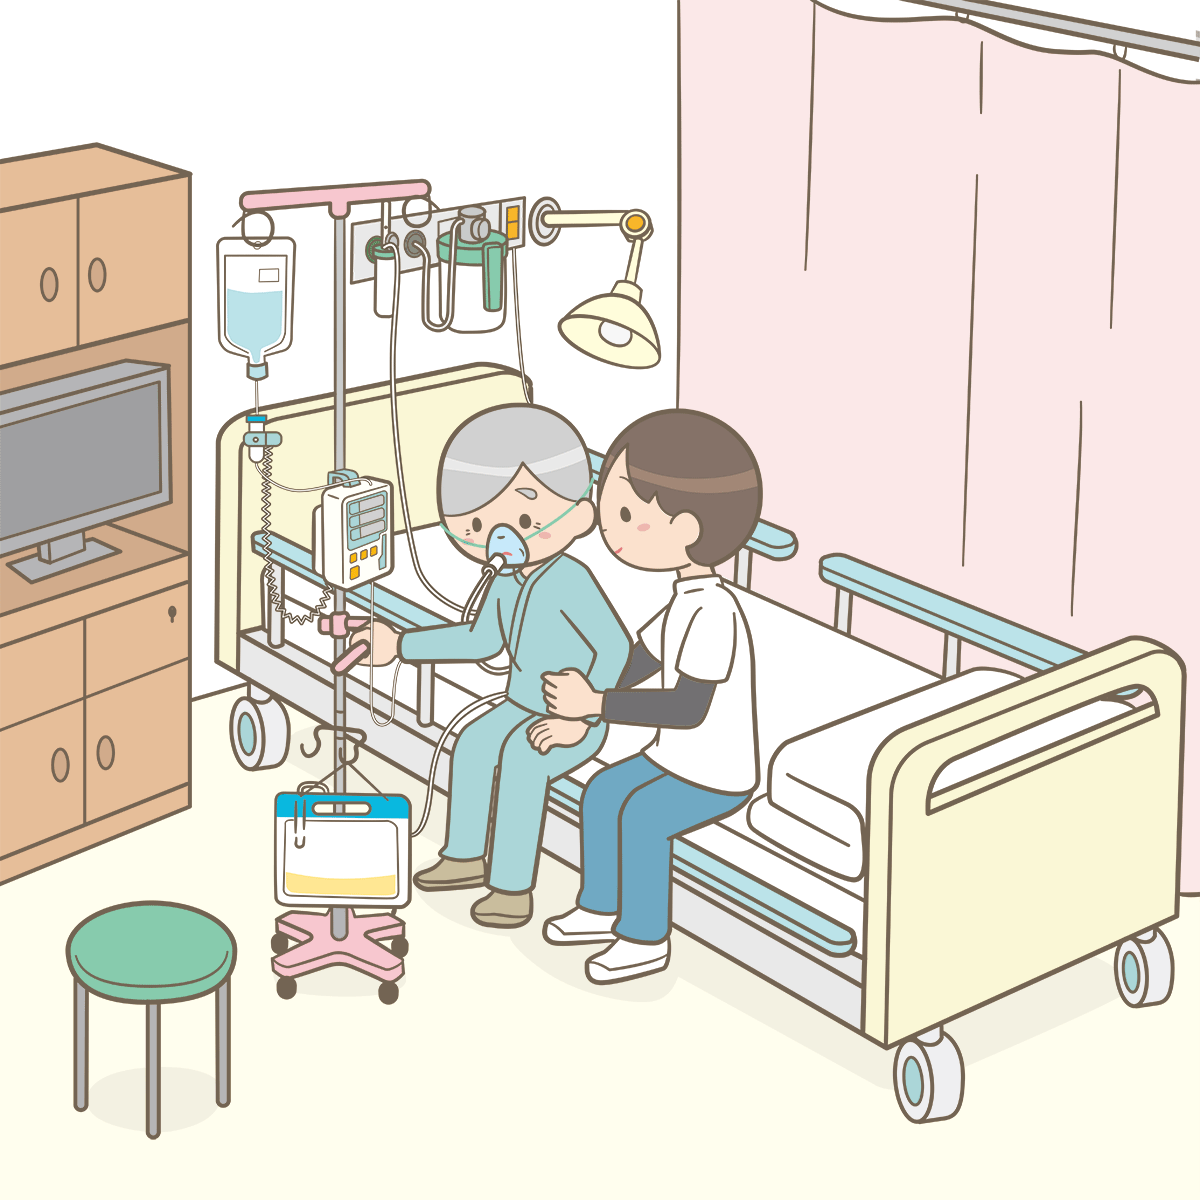 病室で点滴や酸素投与がついている状態でセラピストとベッドに座っている絵